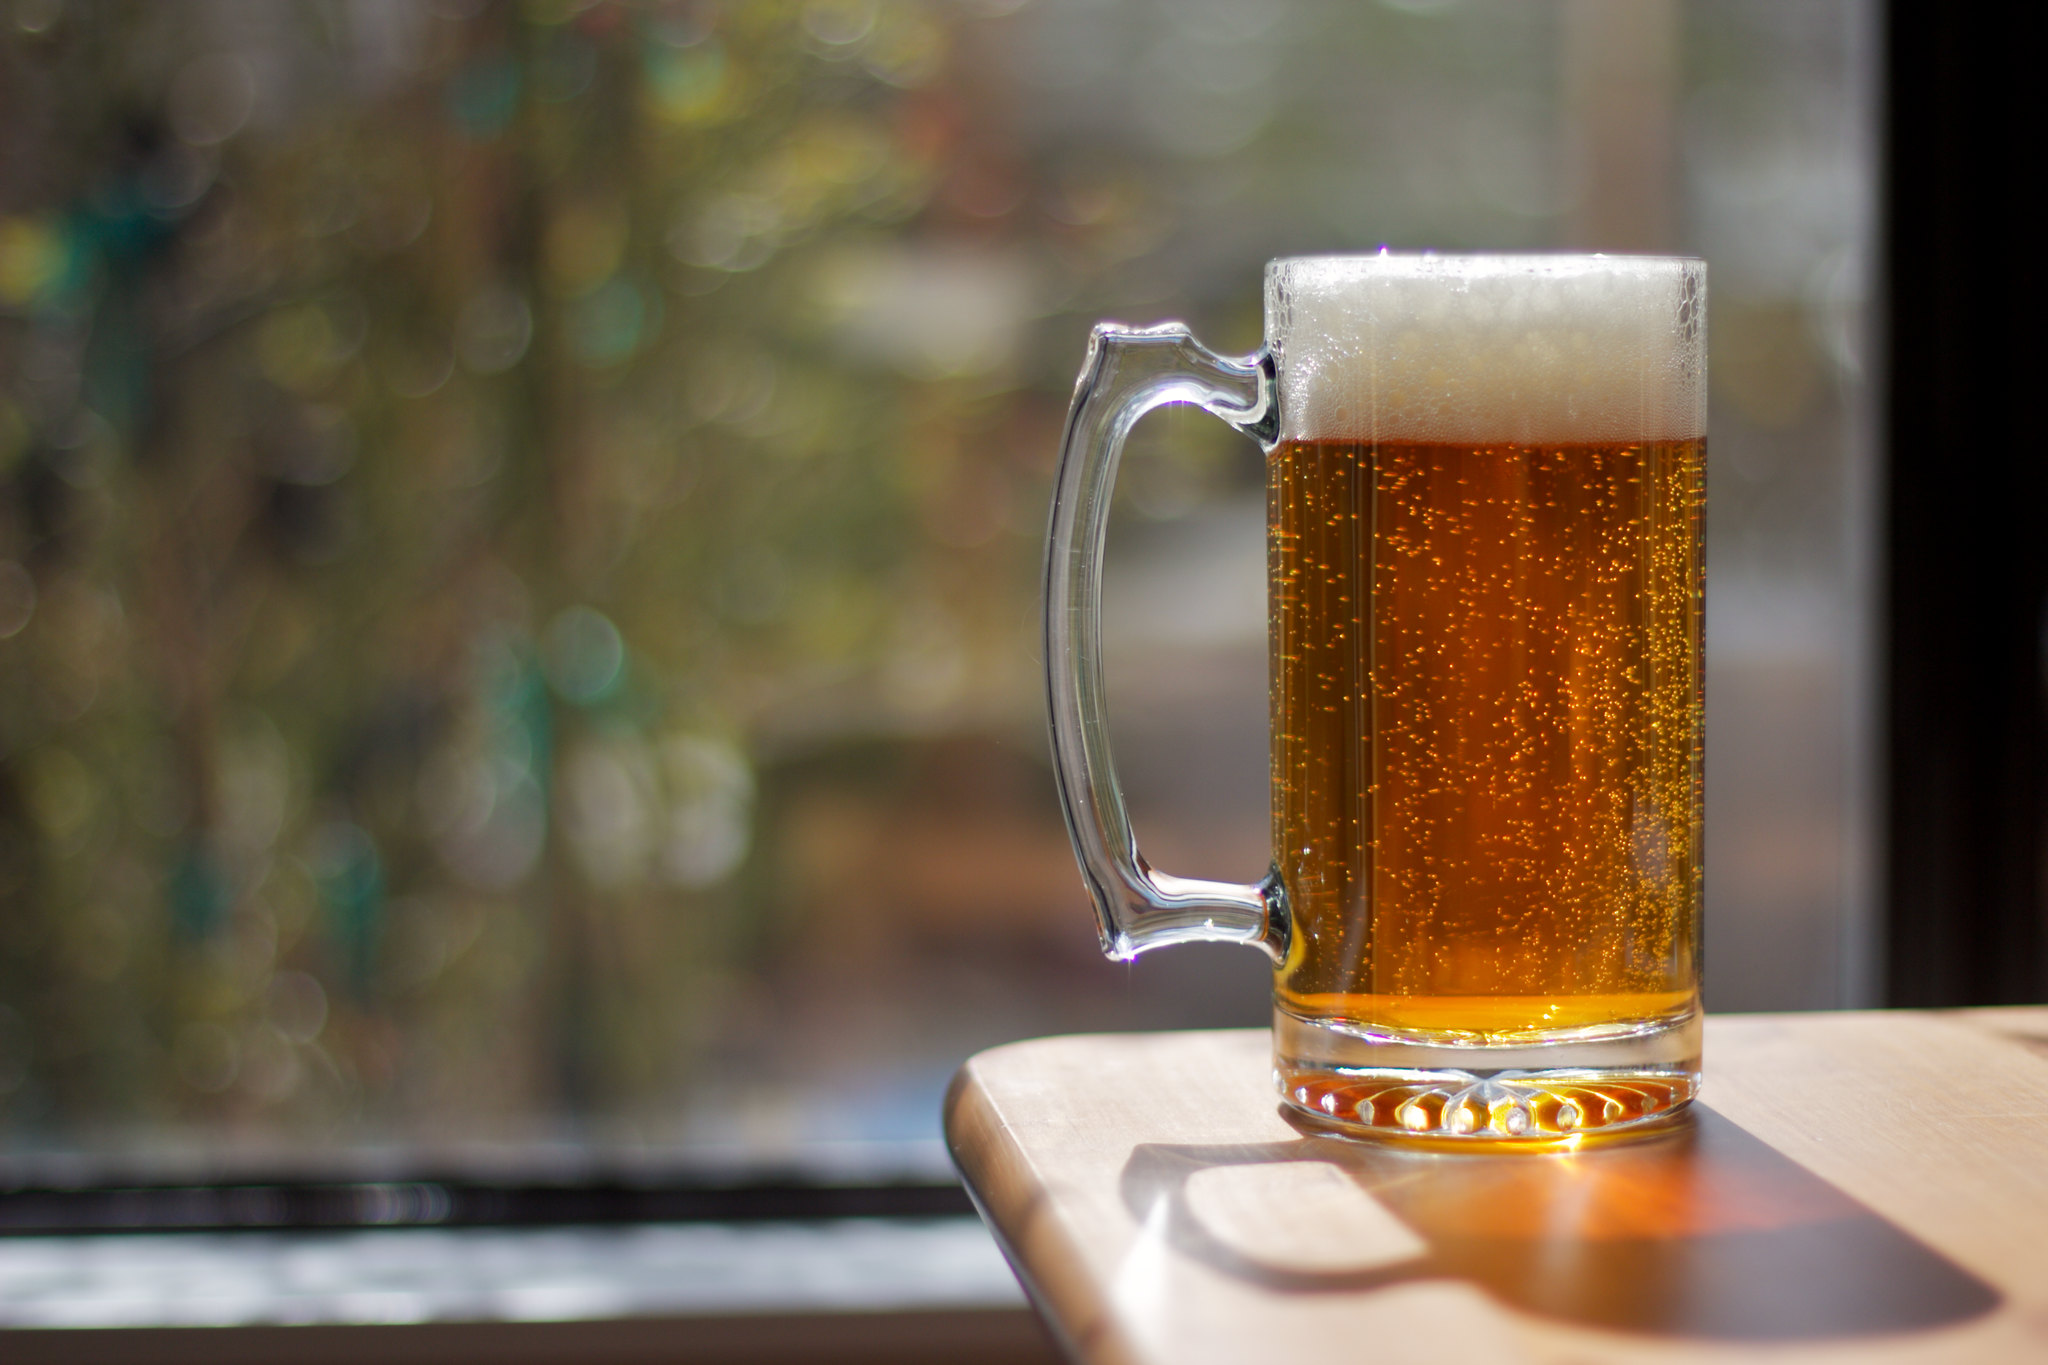 Investigadores belgas han estado entrenando una IA para elaborar mejores cervezas. Los catadores están impresionados